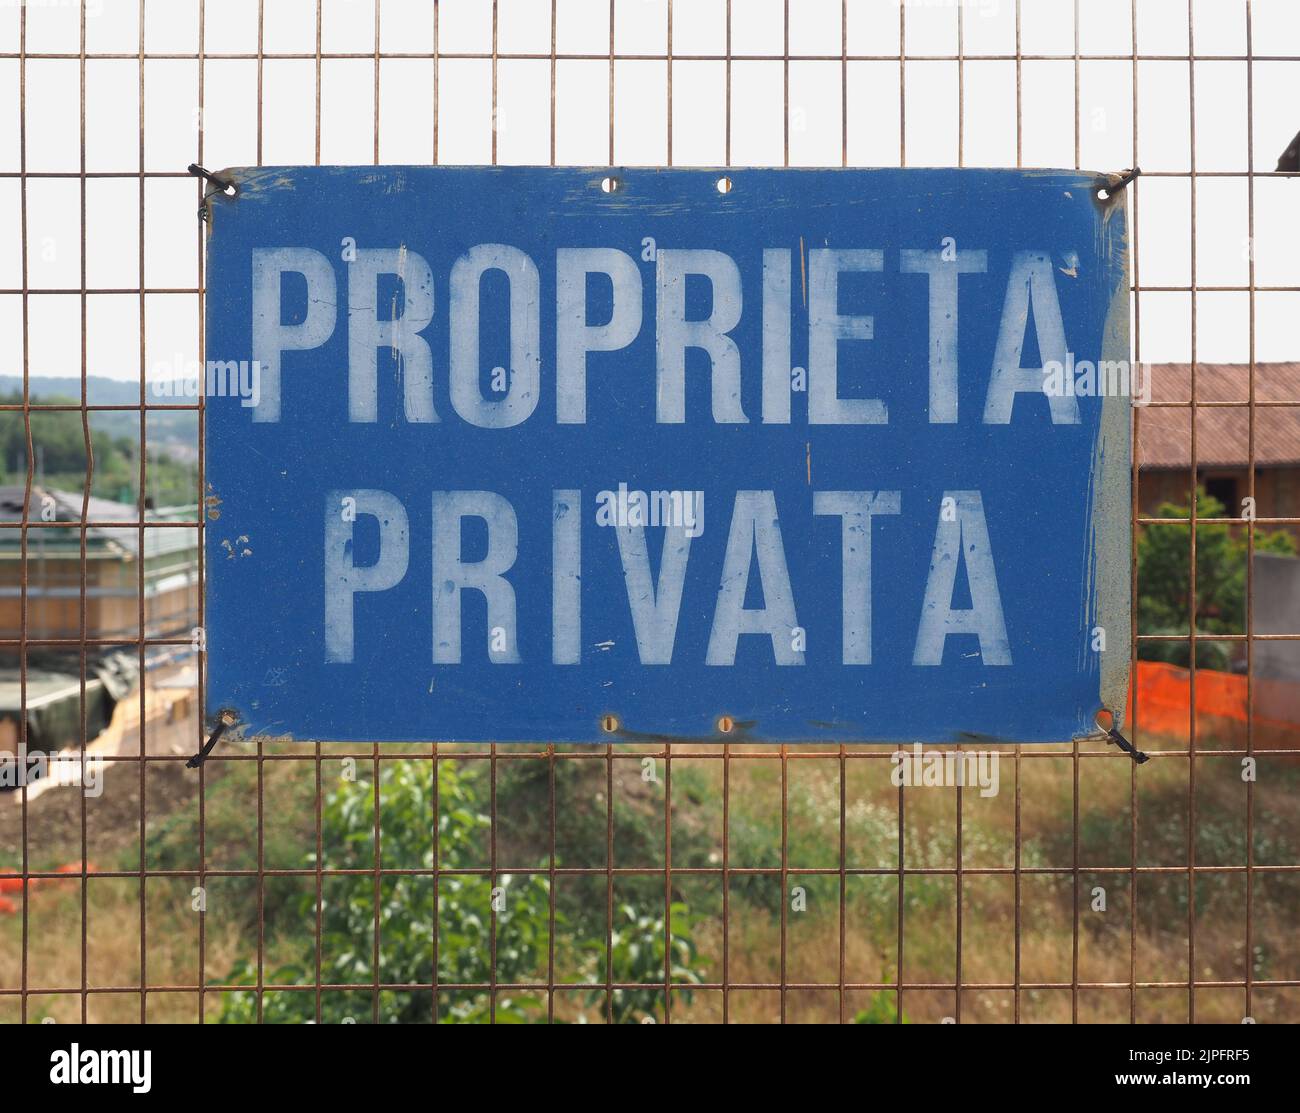 Italian proprieta privata sign, translation private property Stock Photo